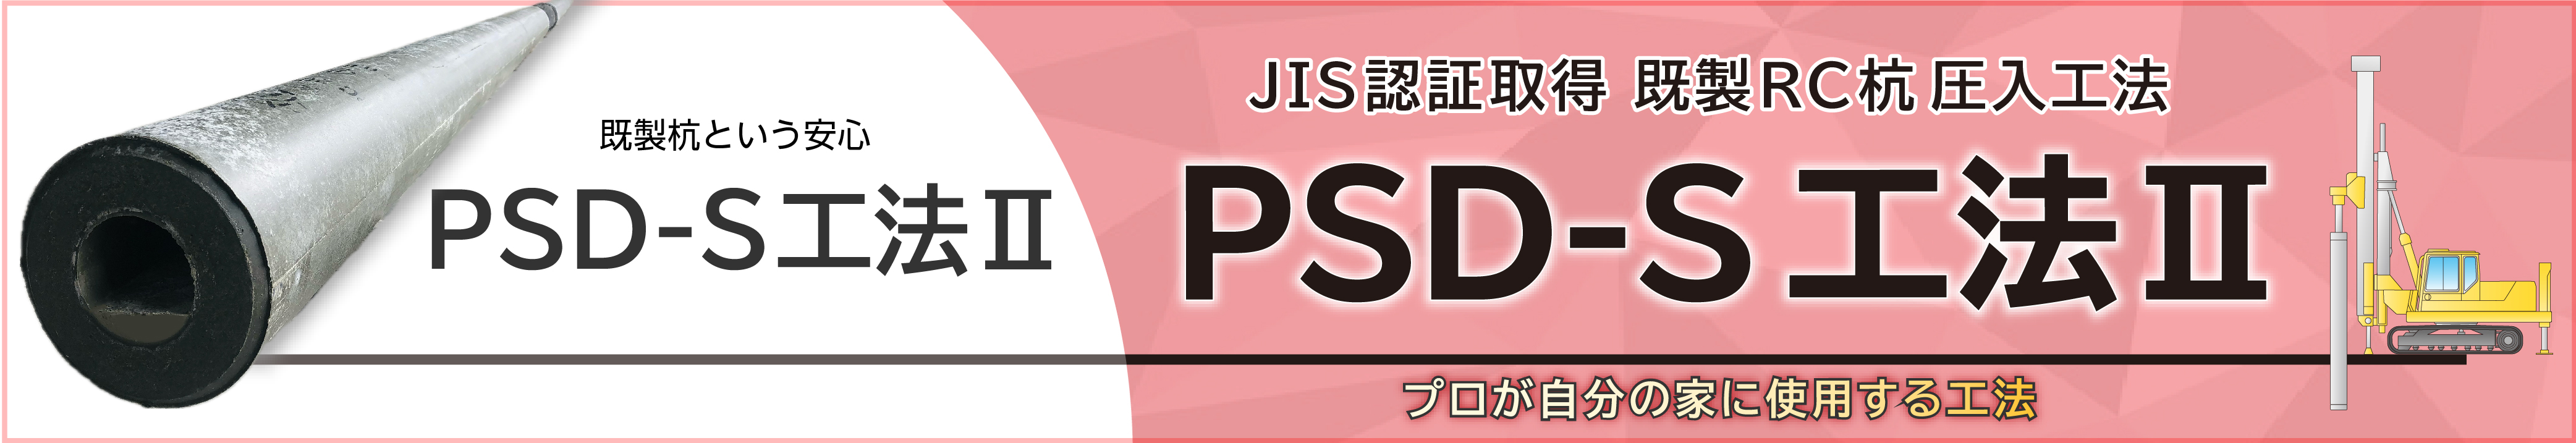 PSD-S工法Ⅱ